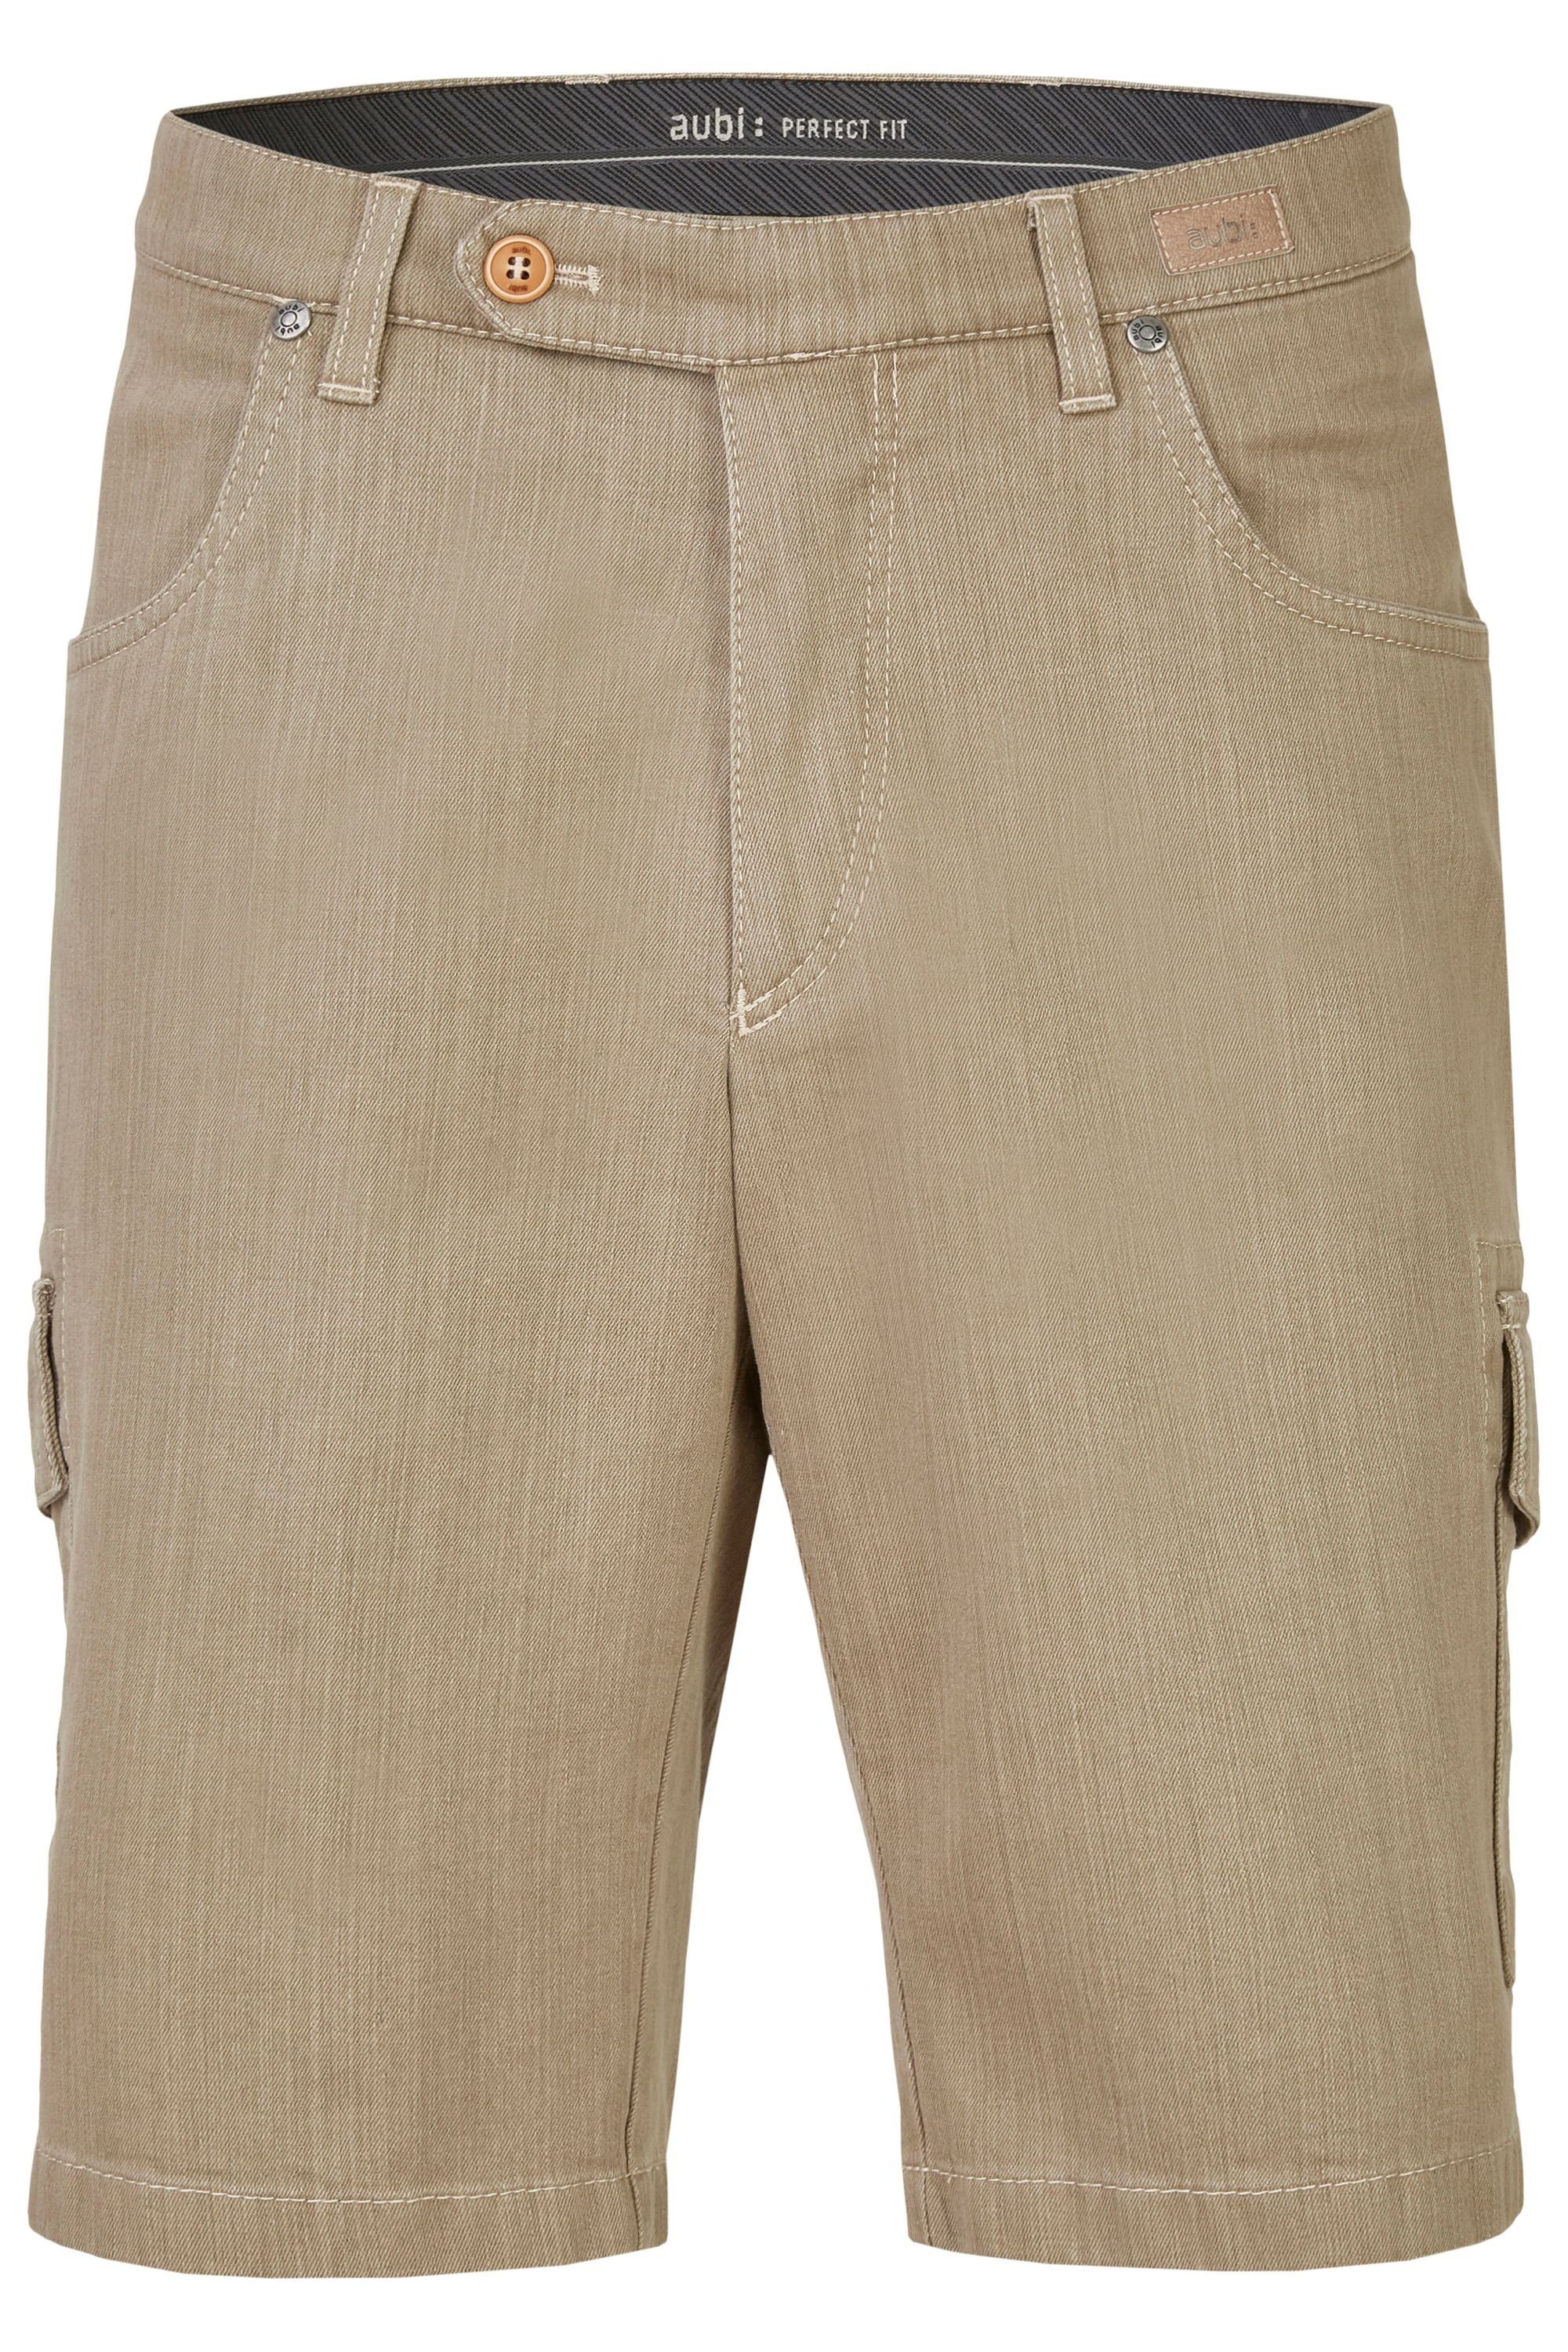 aubi: Bequeme Jeans aubi Perfect Fit Herren Sommer Jeans Cargo Shorts Stretch aus Baumwolle High Flex Modell 616 beige (21)